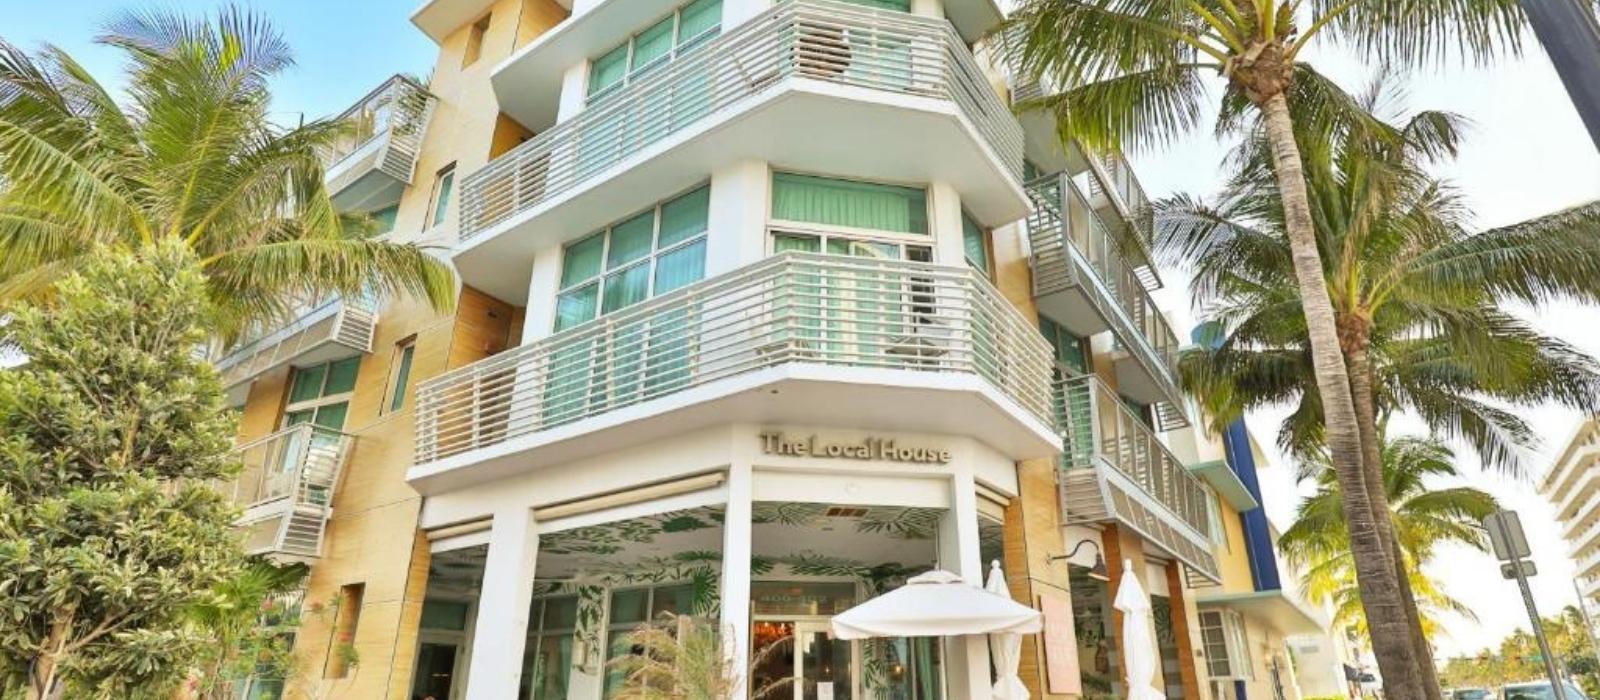 The Local House - Boutique Hotel Miami